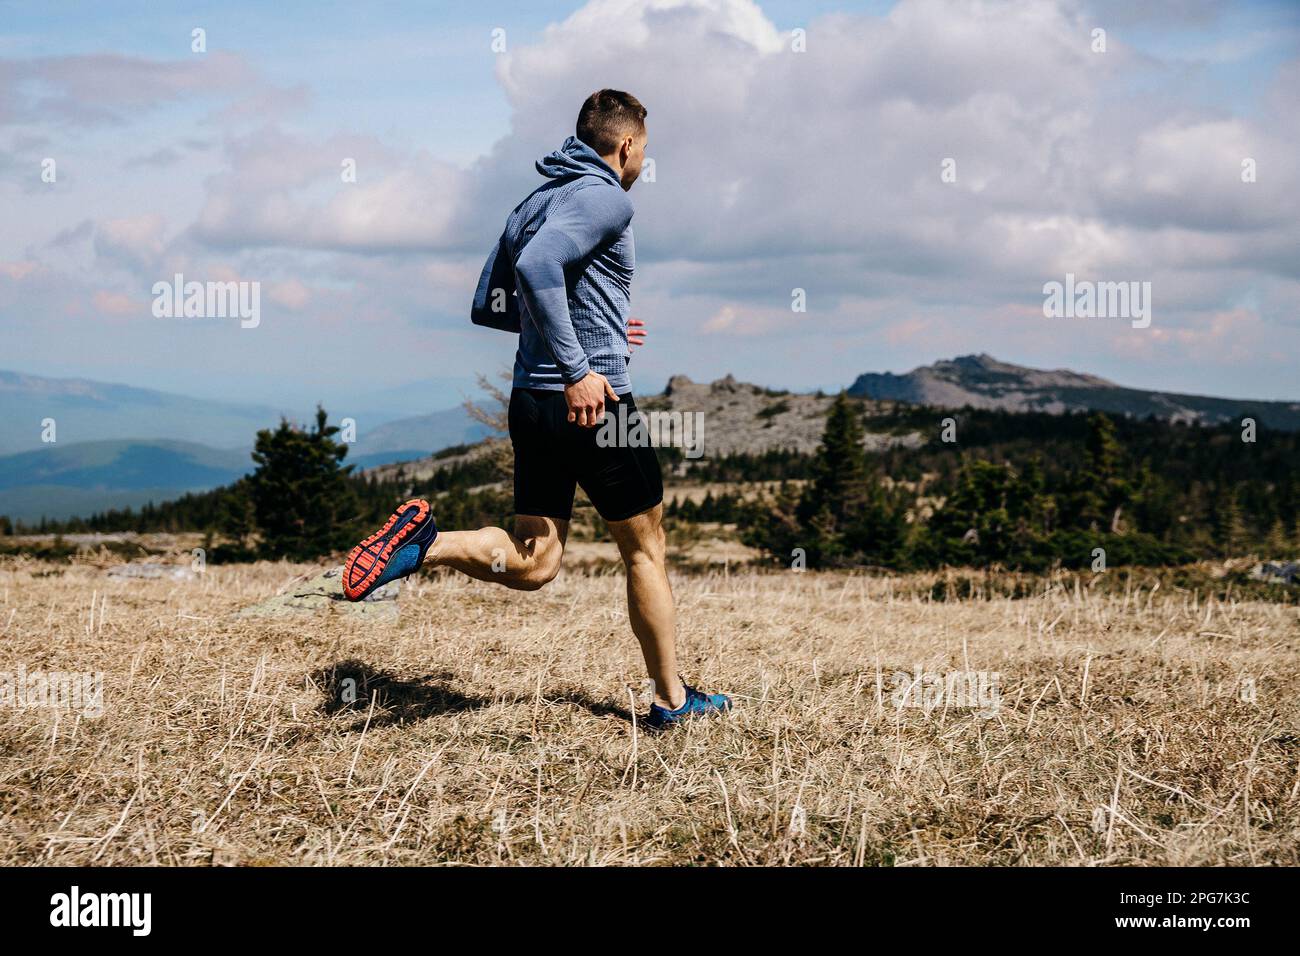 homme coureur piste de montagne sur herbe sèche, vue latérale, chemise à manches longues bleue et collants noirs, photo de sport Banque D'Images